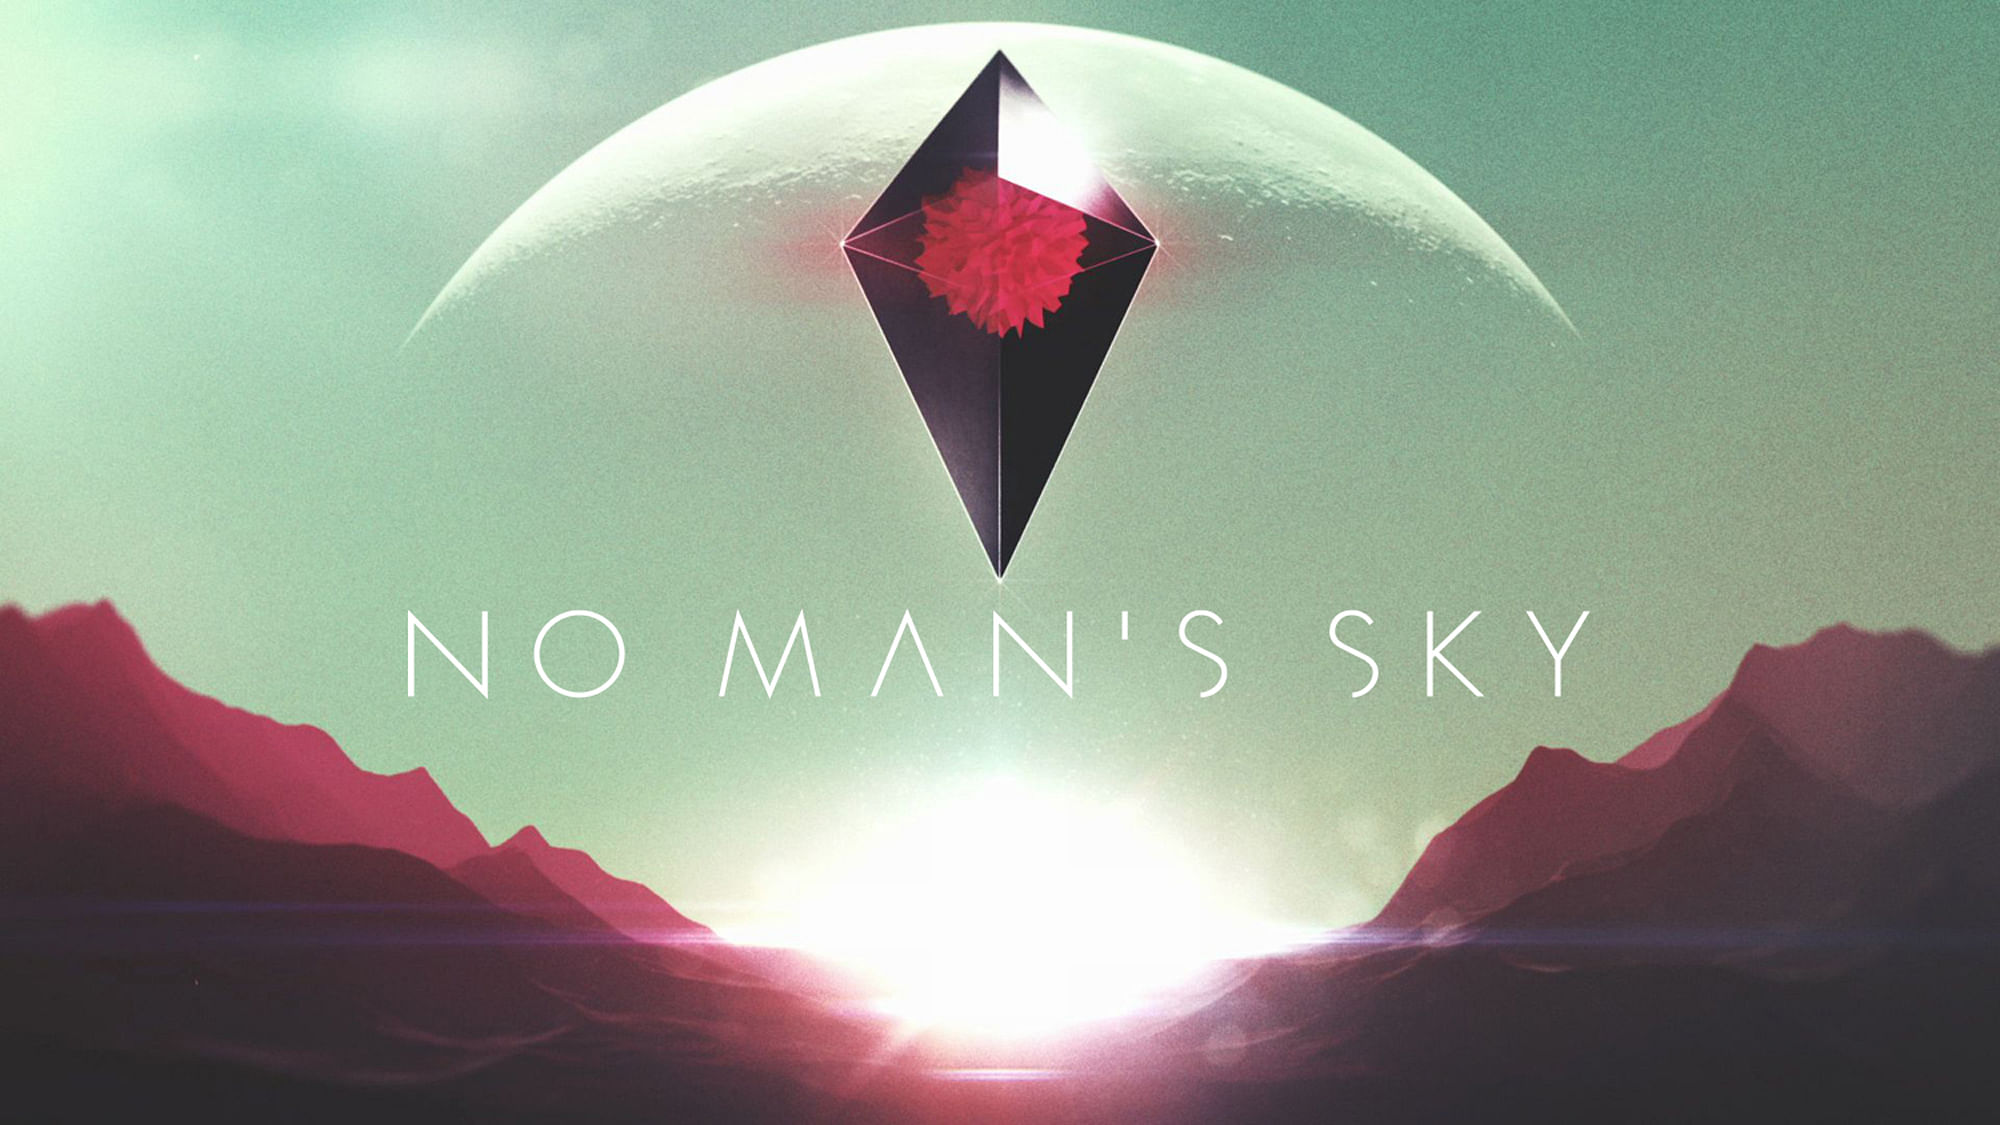 No Man’s Sky will be a Sony PlayStation 4 exclusive. (Photo Courtesy: <a href="http://www.no-mans-sky.com/">no-mans-sky.com</a>)